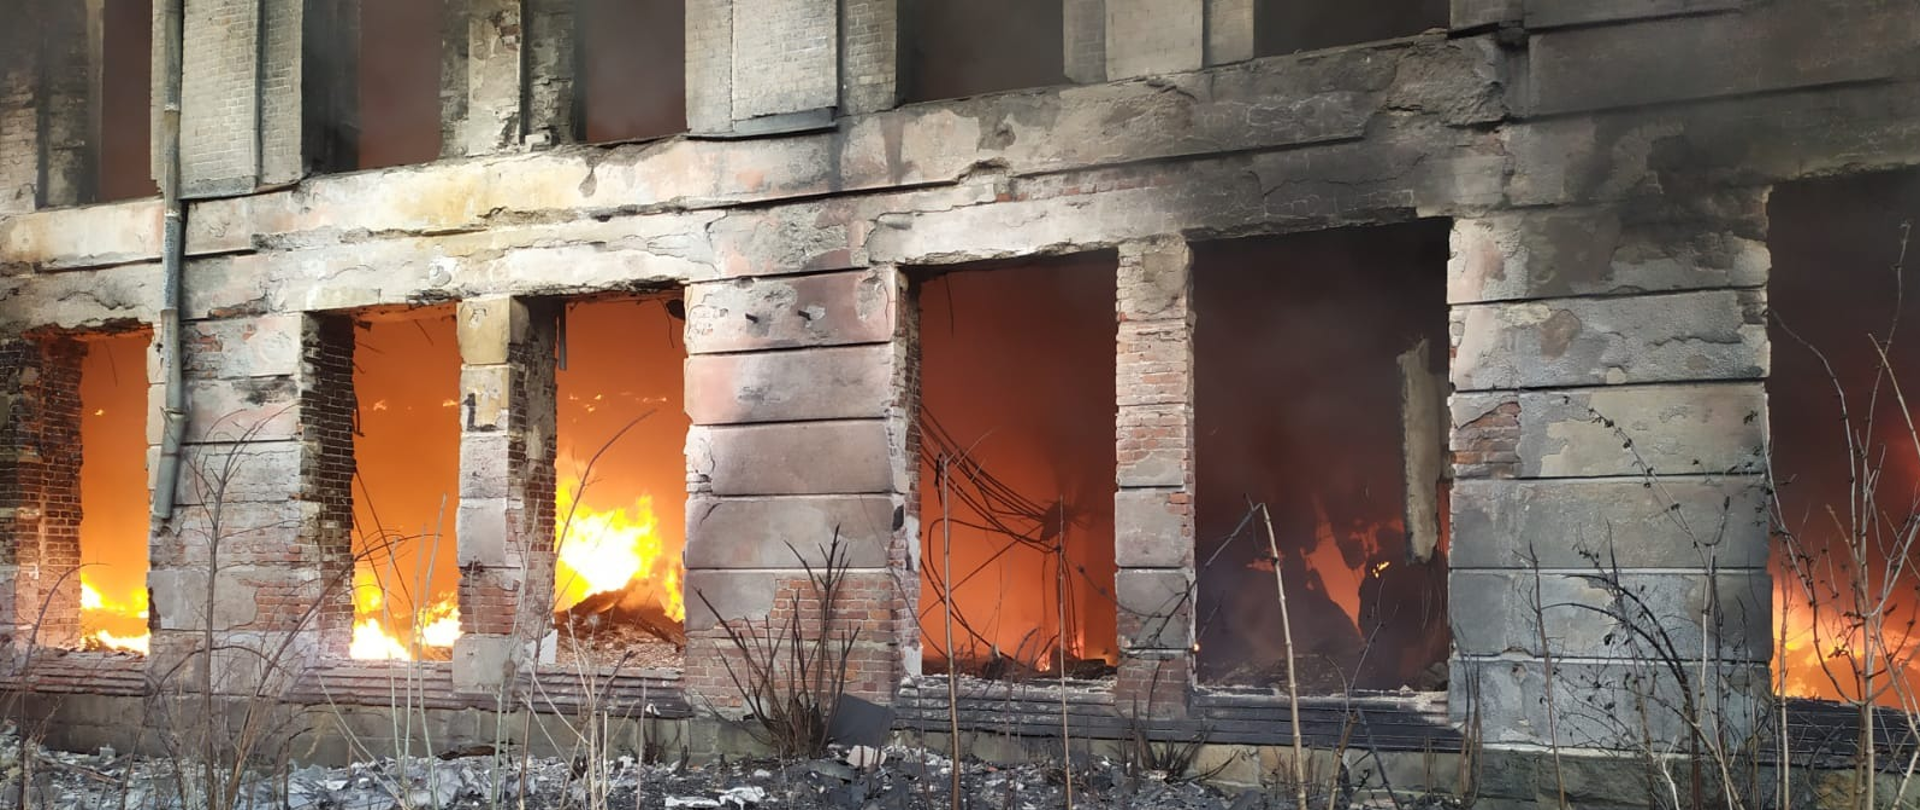 Widok na zgliszcza spalonej fabryki.